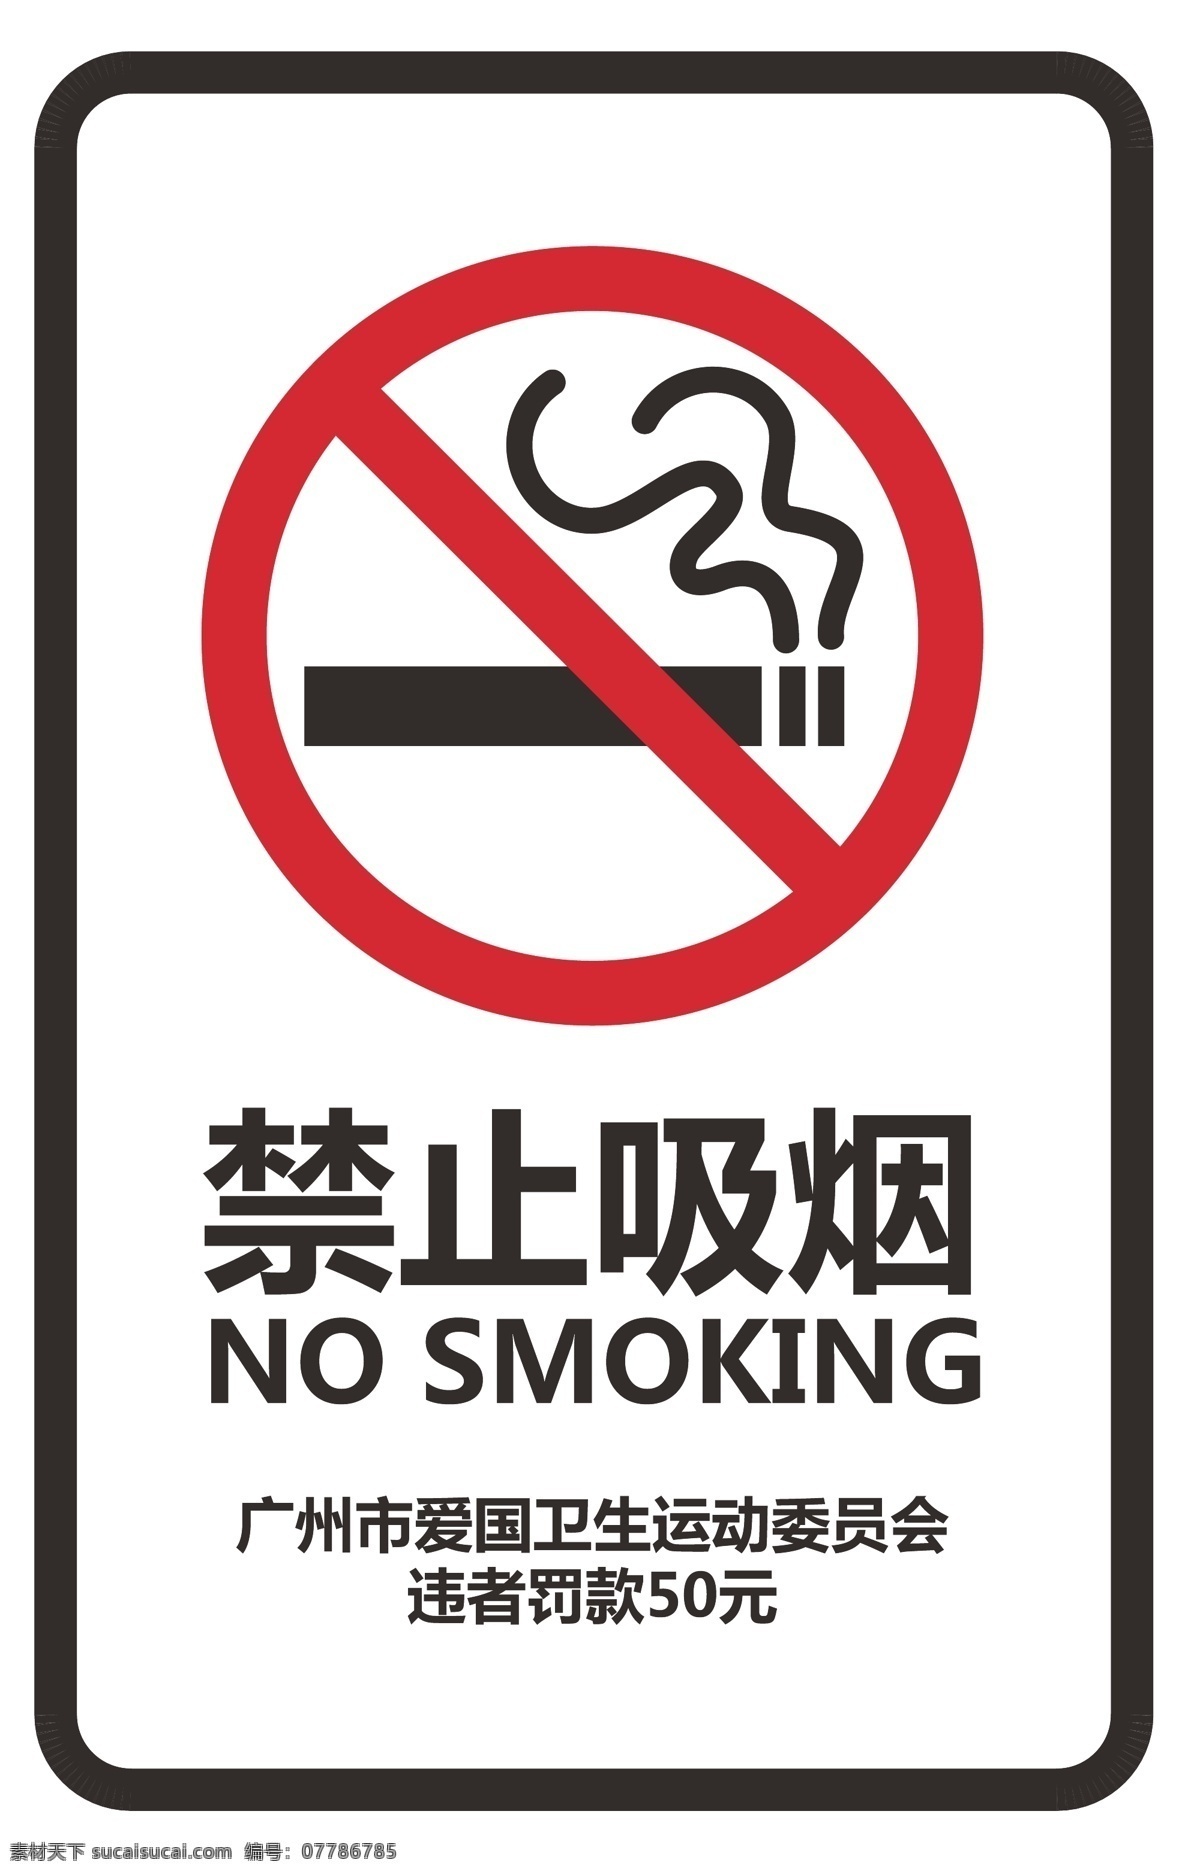 禁烟标志 吸烟 禁烟 标志 logo 矢量 标志图标 公共标识标志